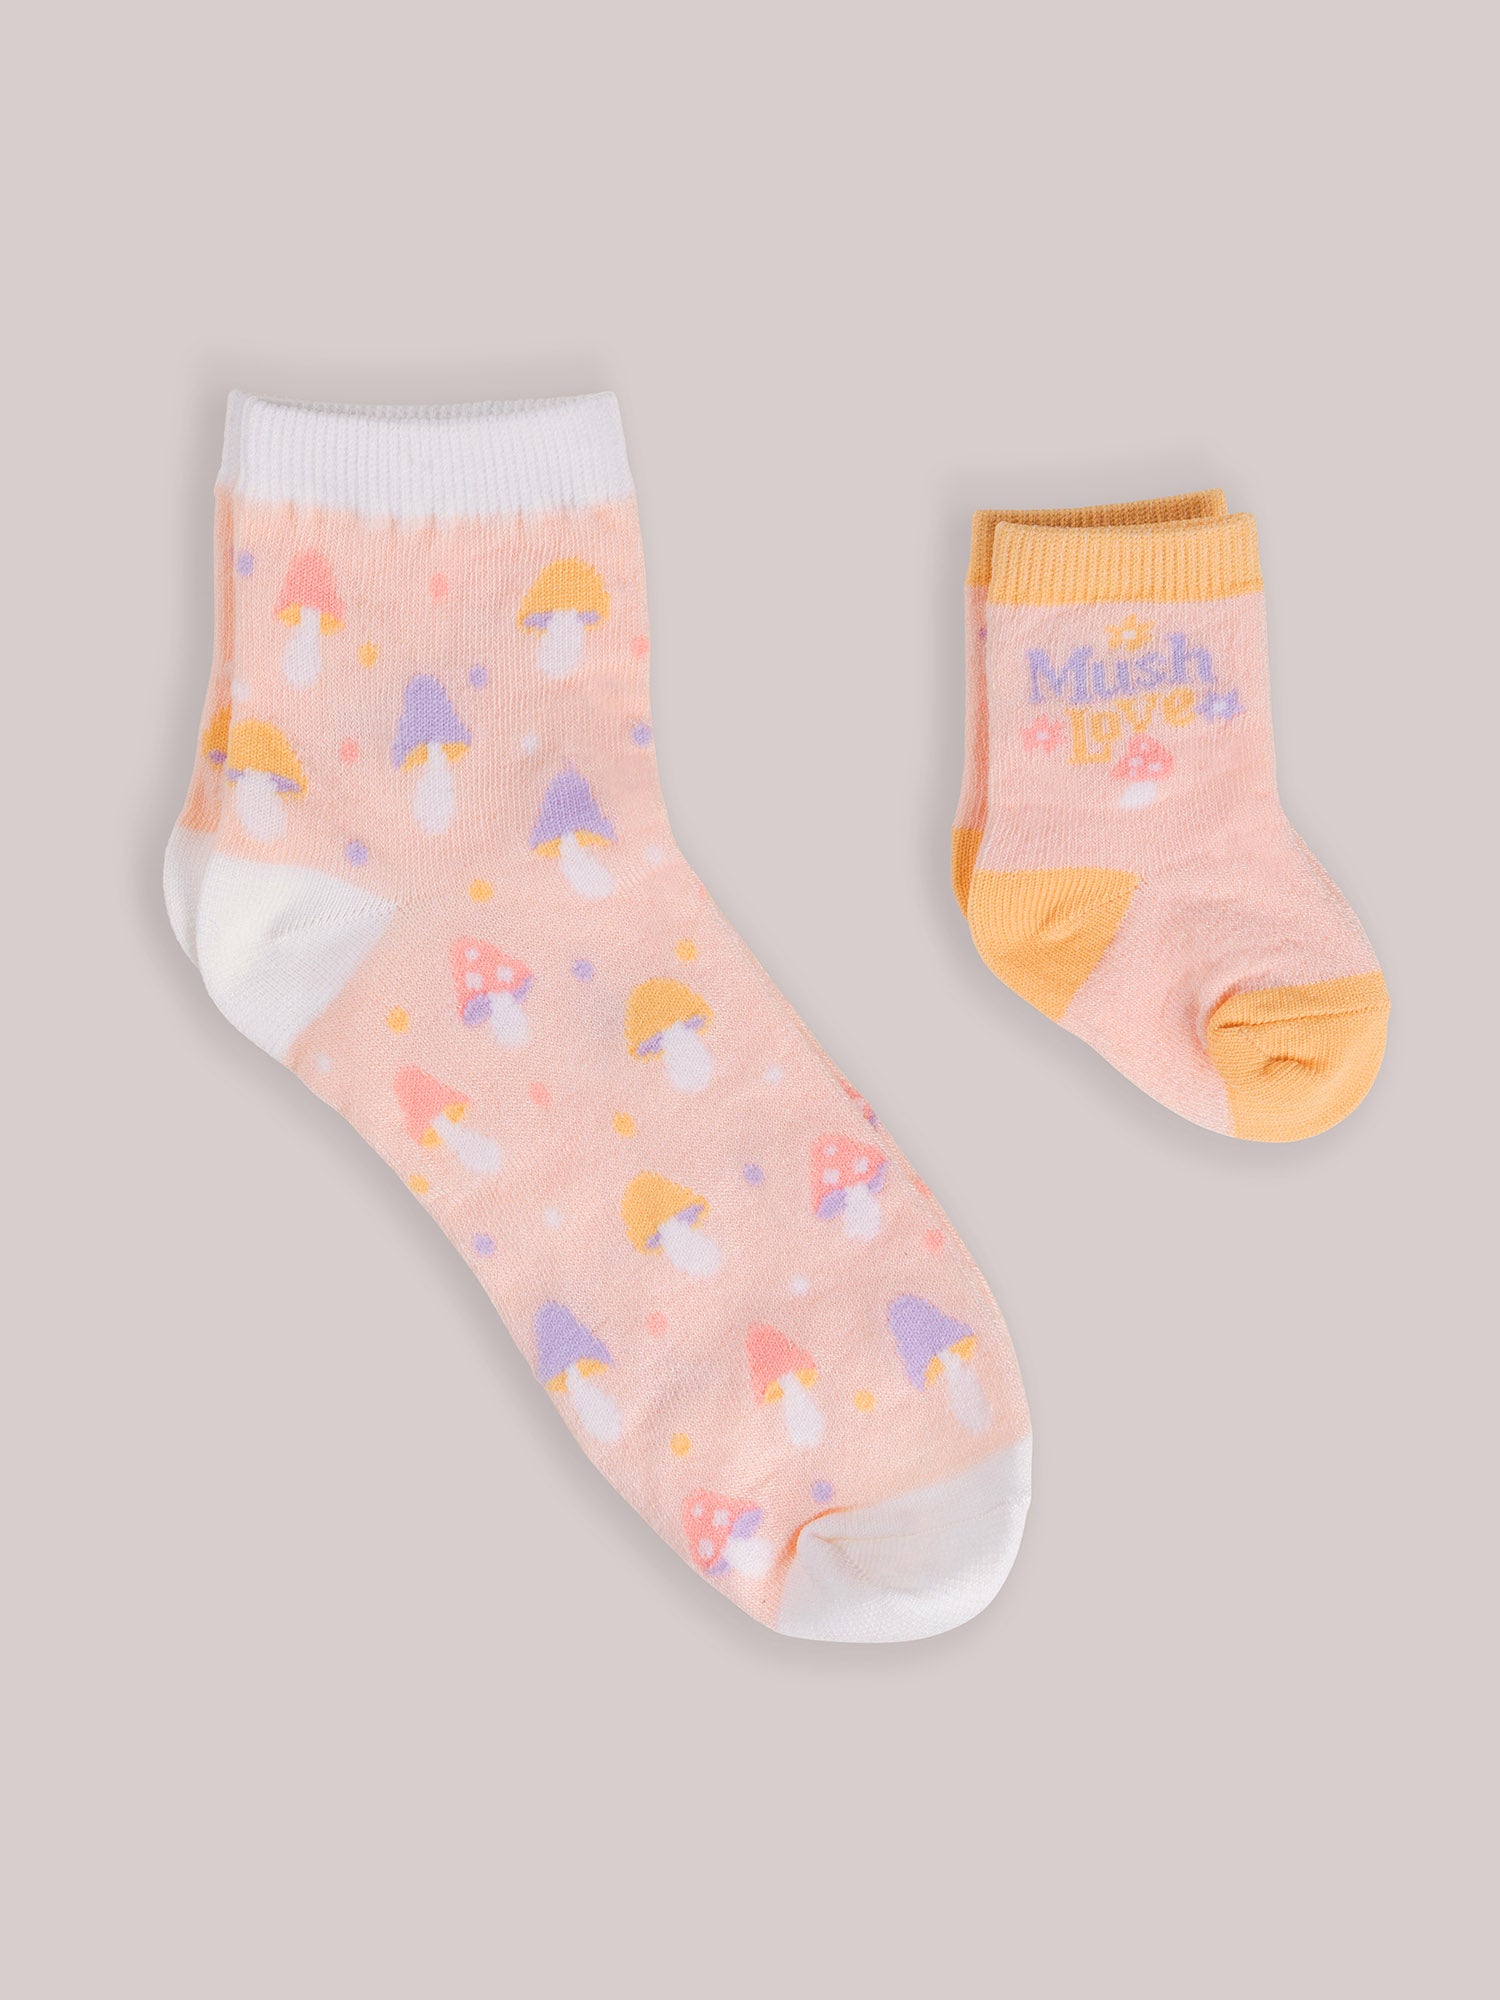 Mama & Me Socks -  Mushy Love